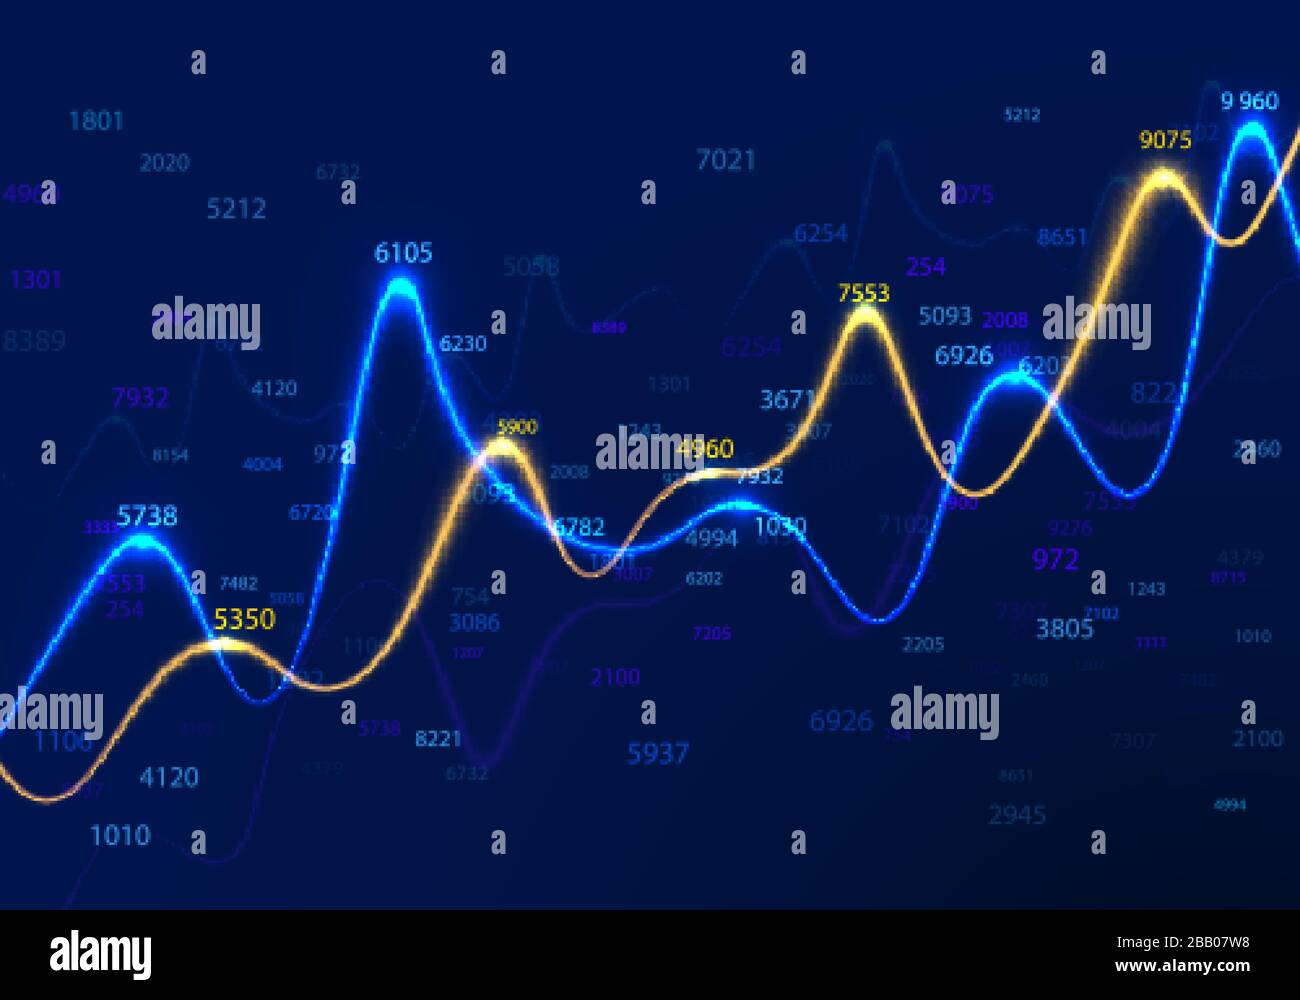 Diagrammi di business e grafici su sfondo blu con numeri casuali. Dati statistici e ricerca commerciale. Relazione finanziaria e schemi economici. INF Illustrazione Vettoriale